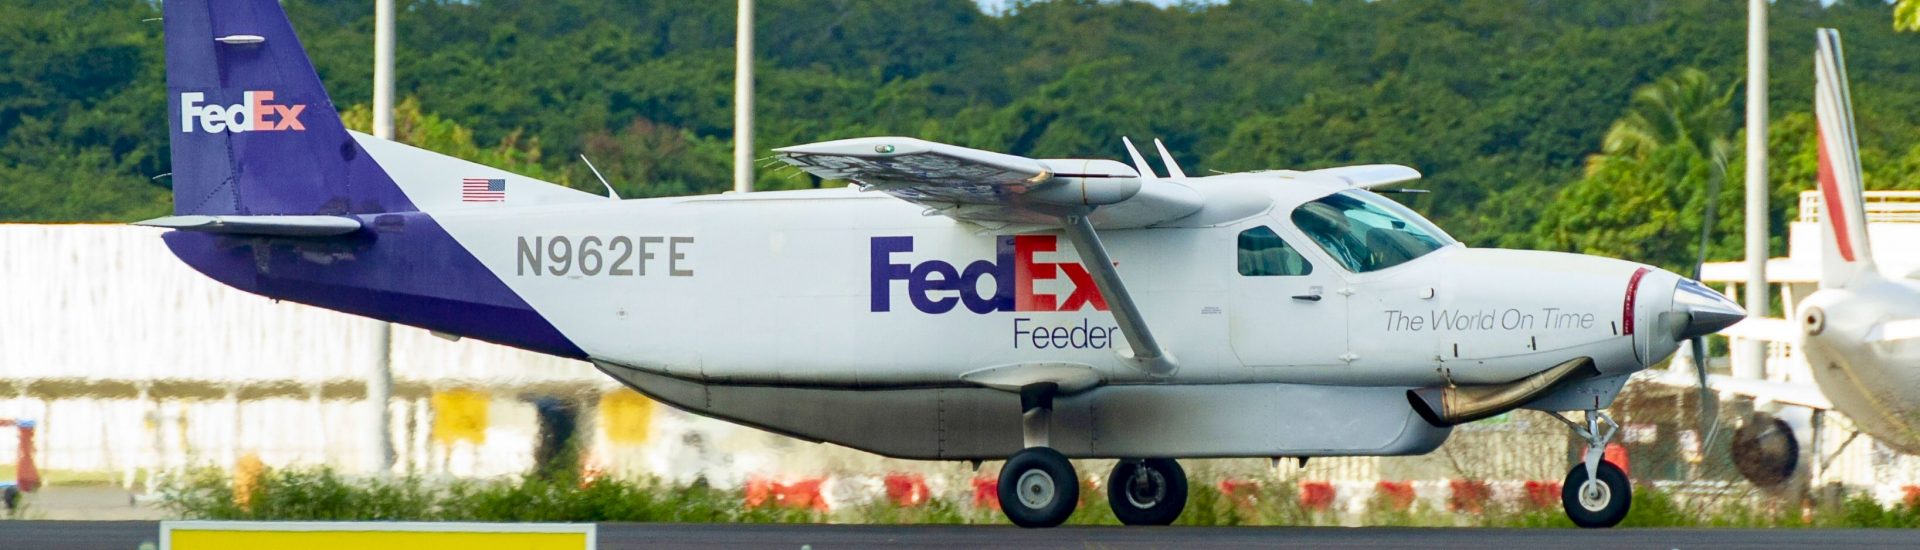 Cessna 208B Fedex Feeder N962FE